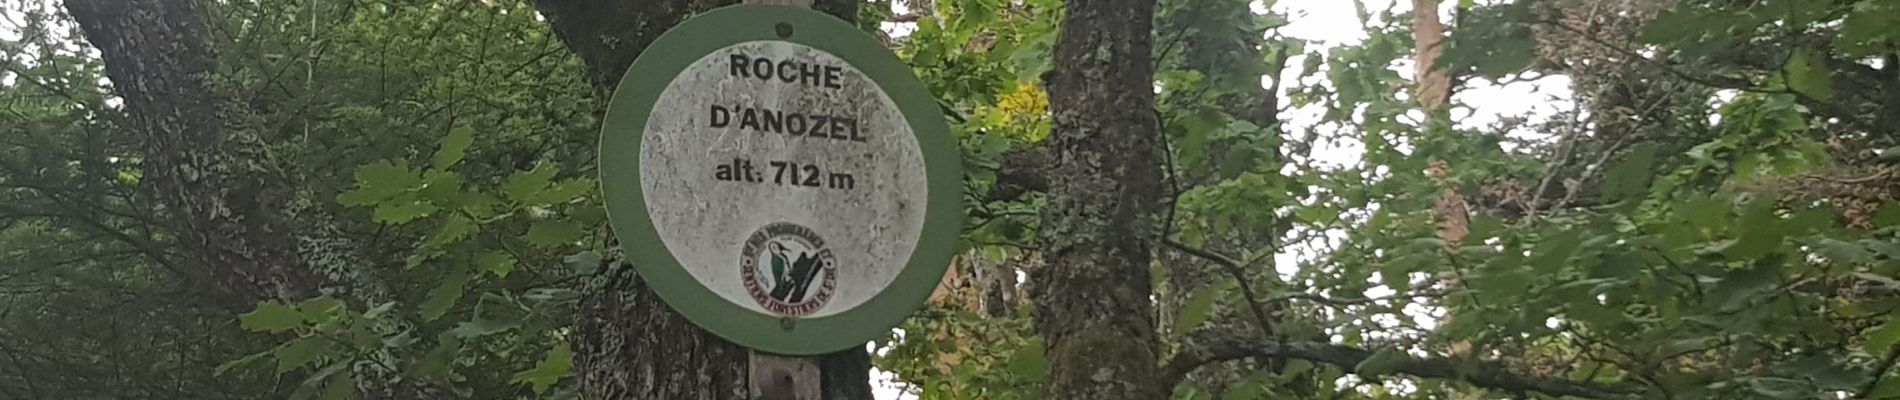 Randonnée Trail Taintrux - 2020 08 16  Roche d'Anozel  - Photo